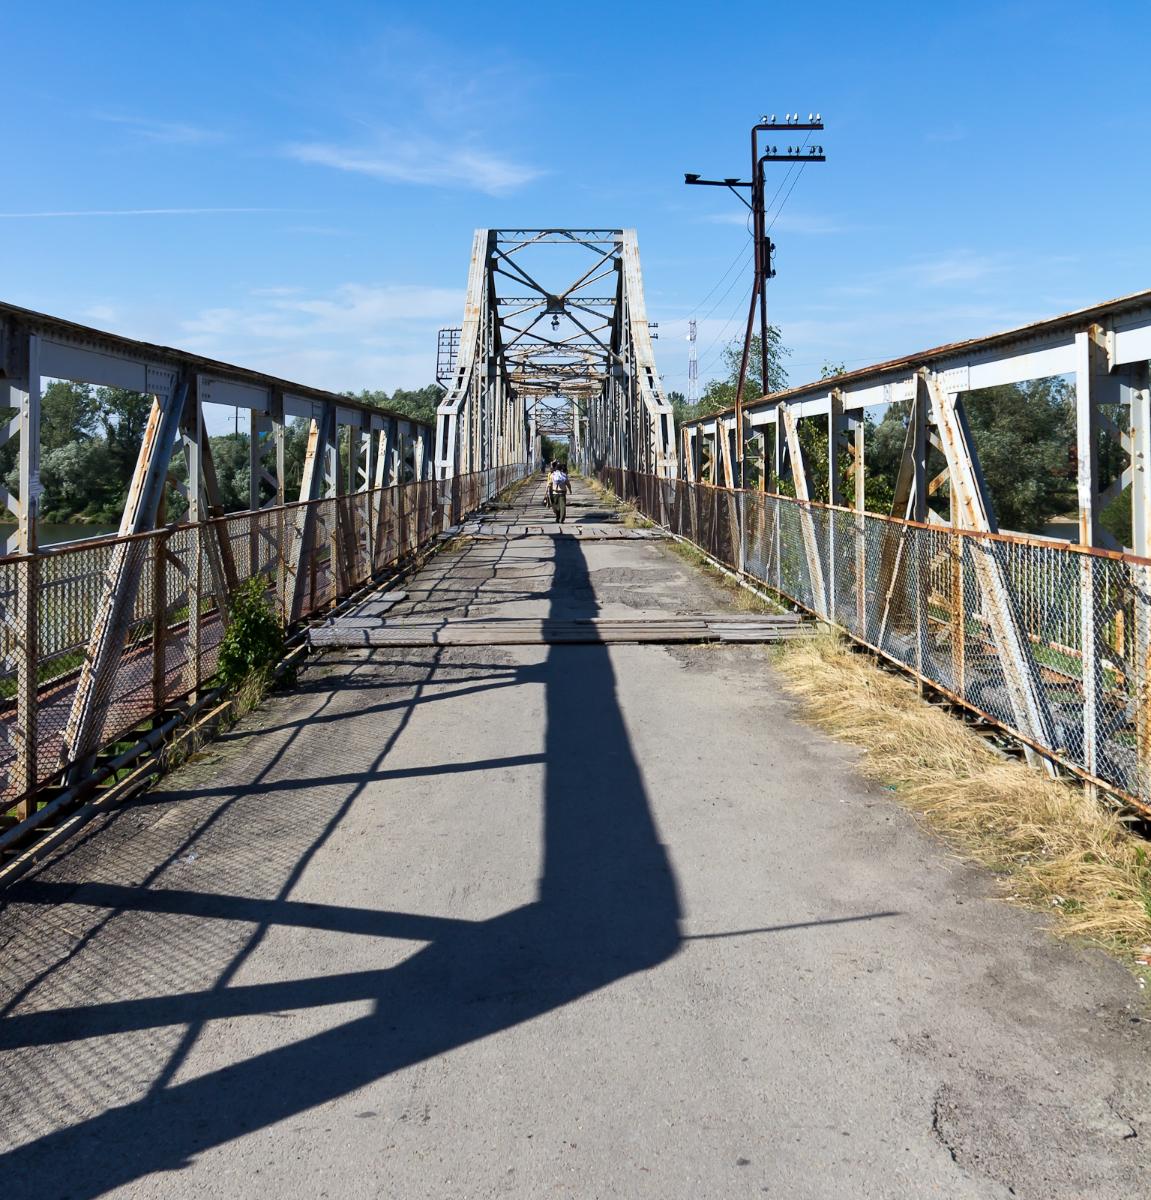 Alte Eisenbrücke in Halytsch (Oblast Iwano-Frankiwsk, Ukraine) über die Dnister Die Straßenoberfläche ist in einem sehr schlechten Zustand, Löcher werden lediglich durch Holzplanken abgedeckt. Autos nutzen die neuere Brücke ca. 100 m westwärts.